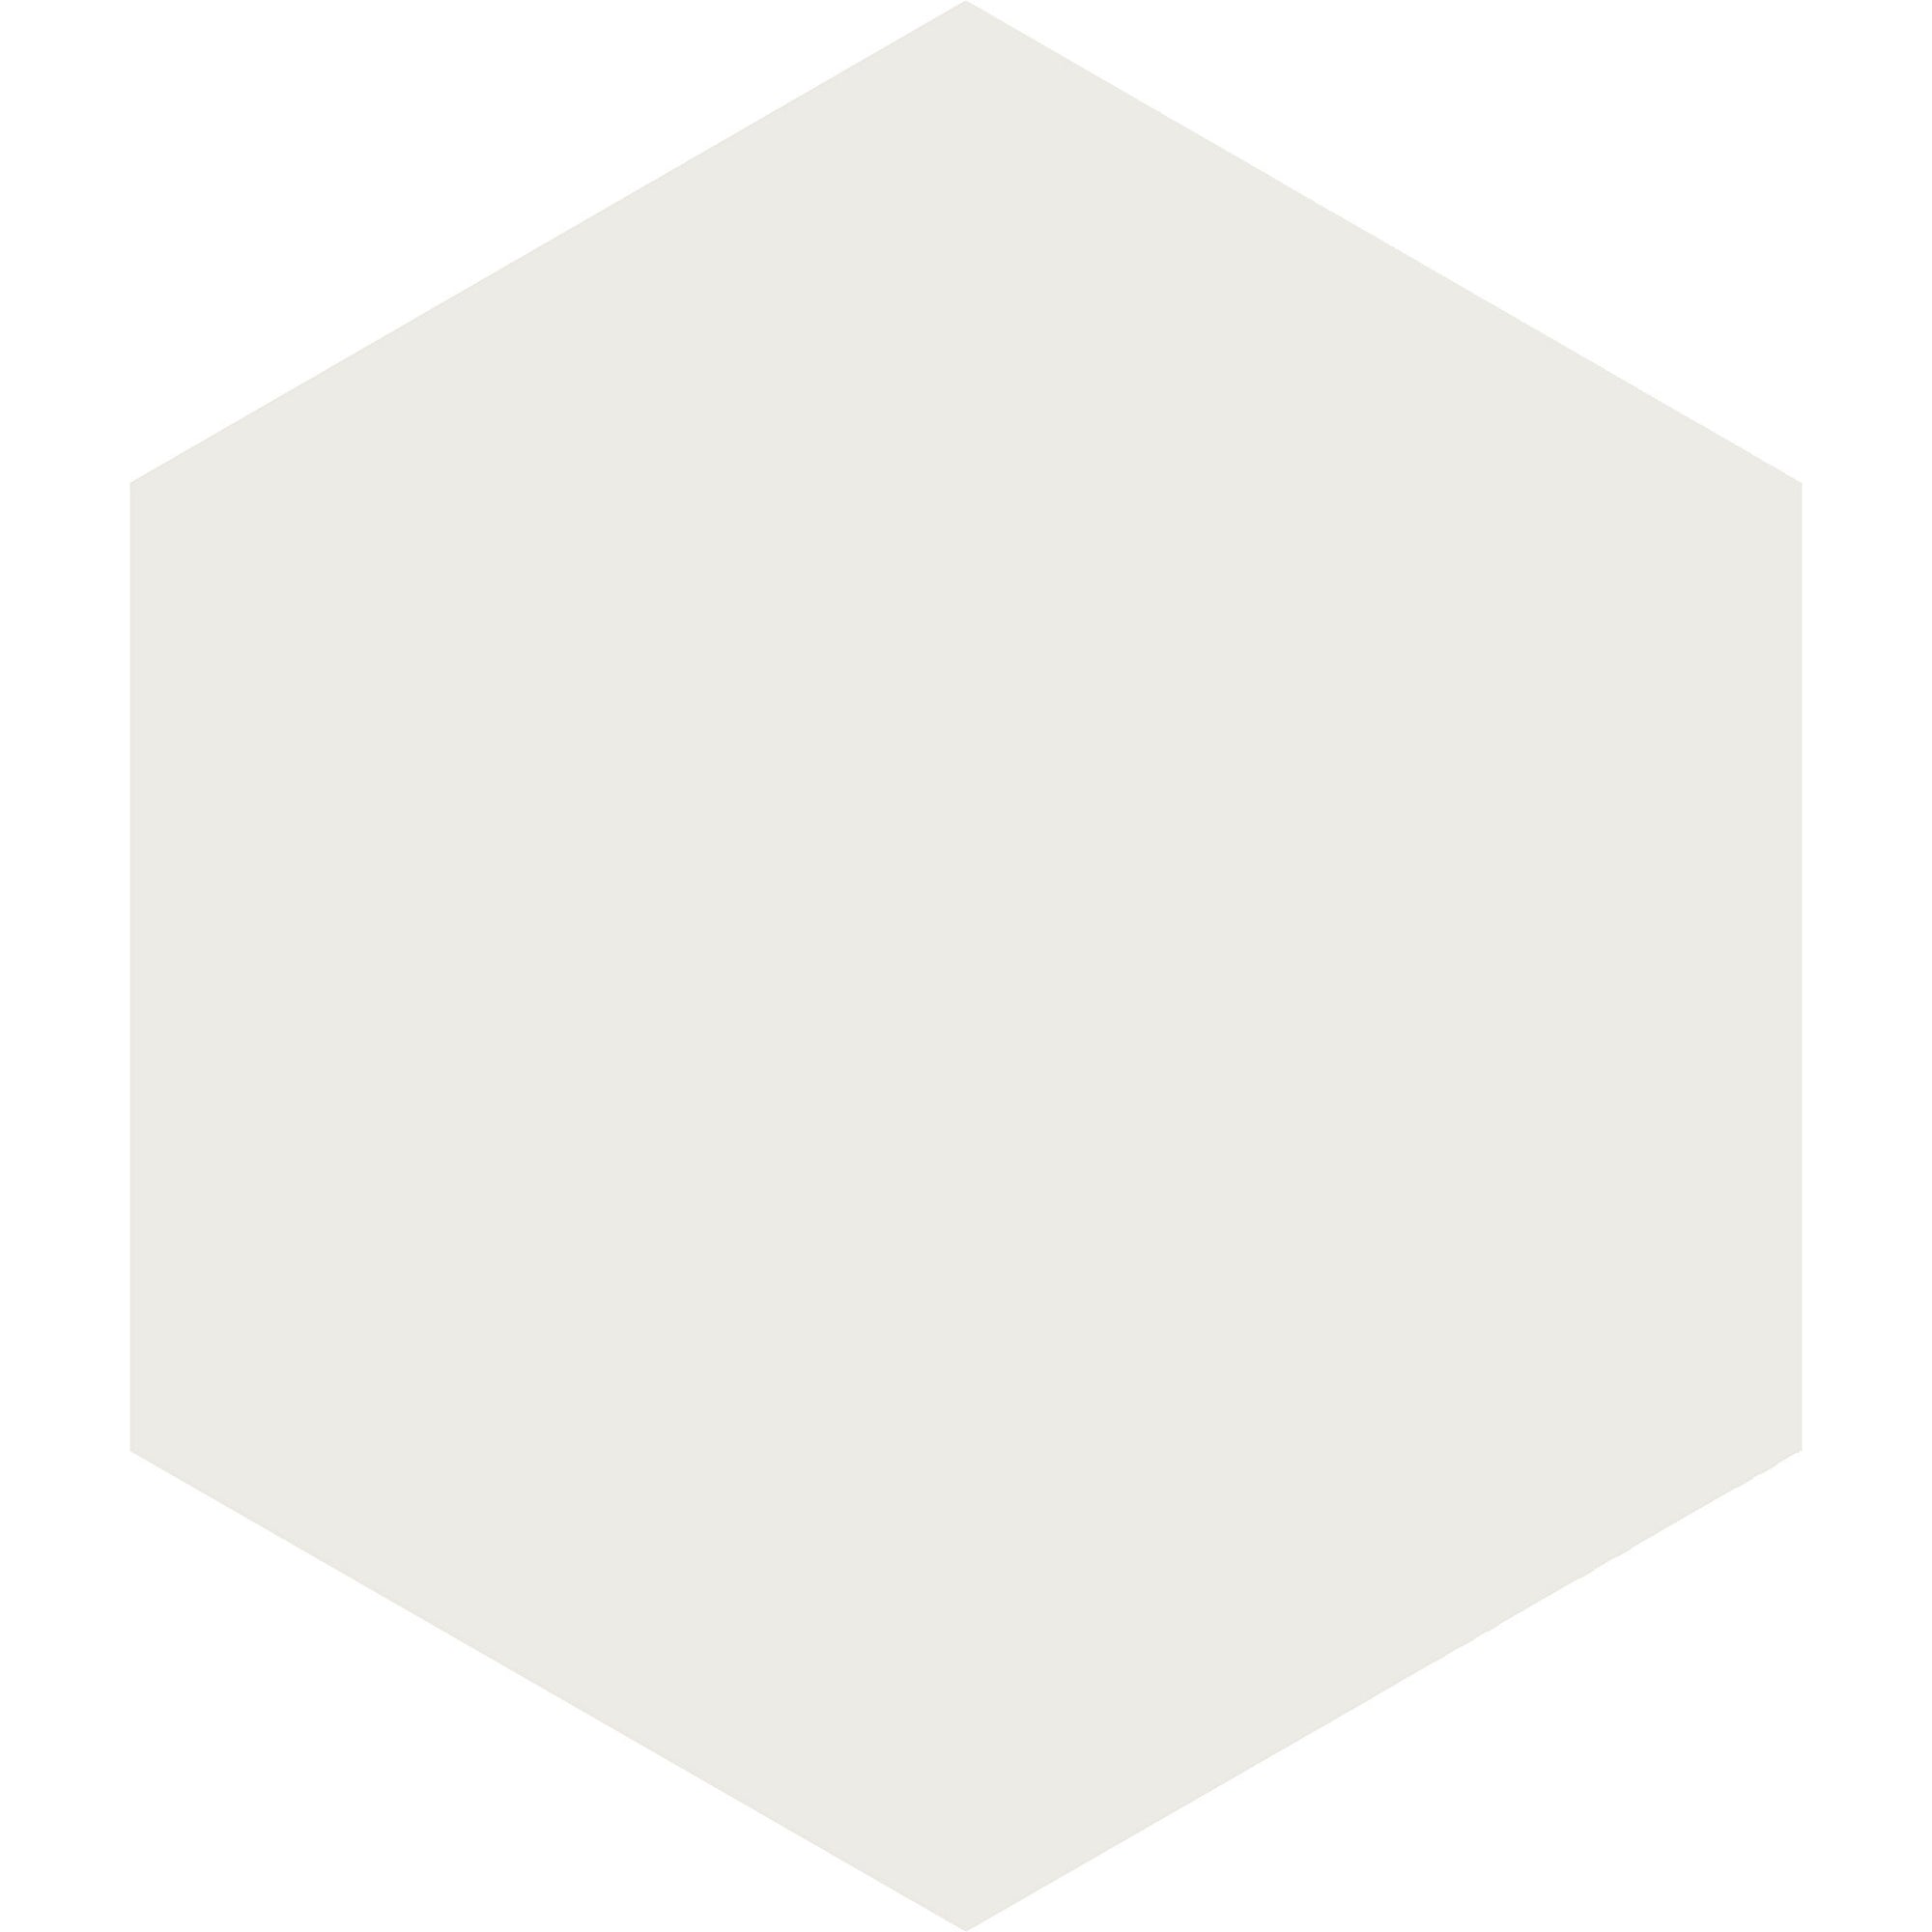 Arizona Tile - Paros Series 14" x 16" Rectified Color Body Porcelain Hexagon Tile - White